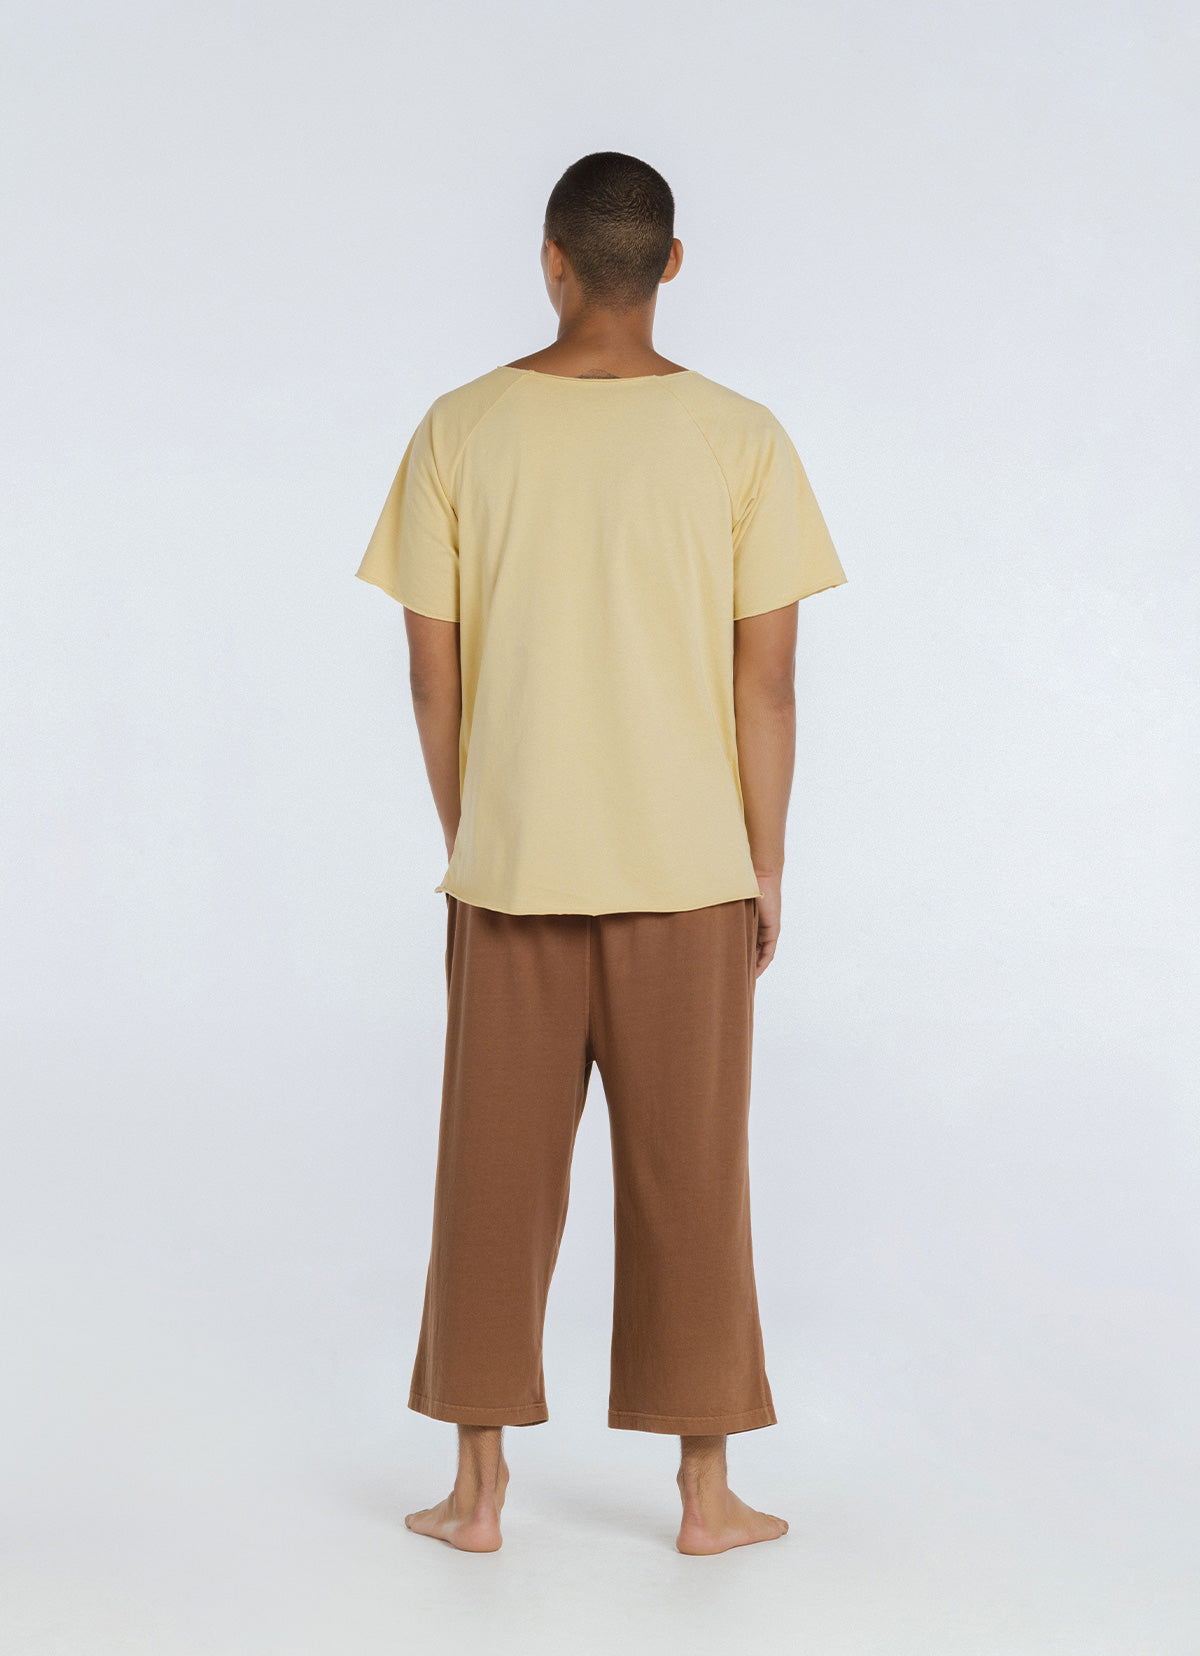 Aman crop pants (For Men)_Brown